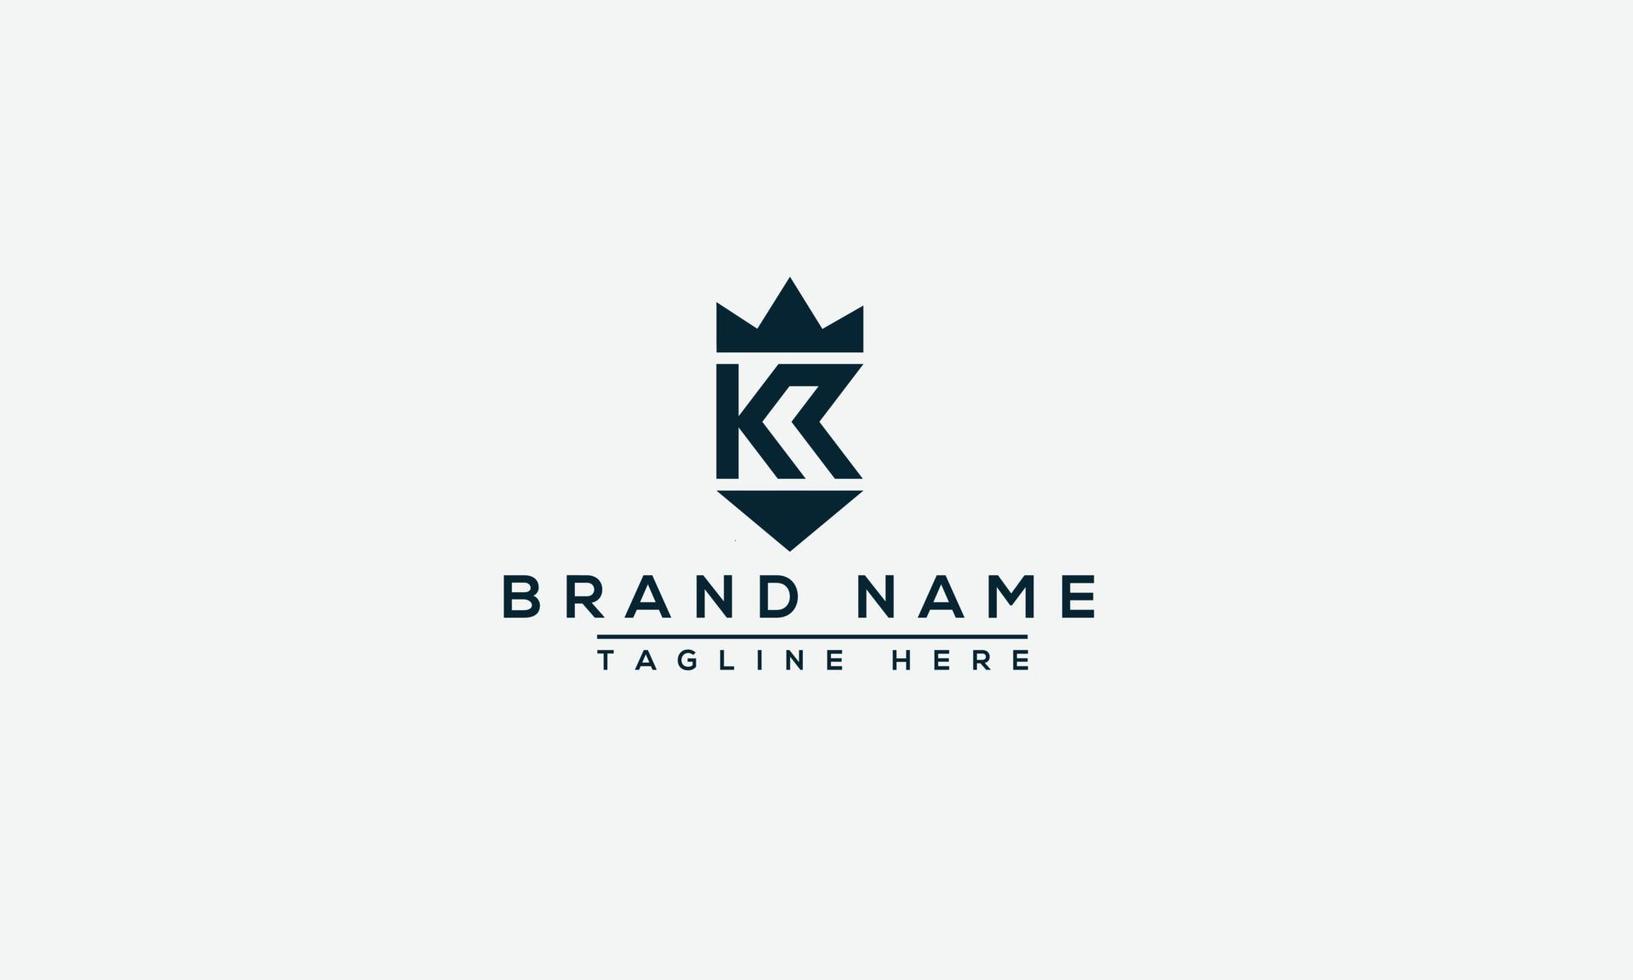 elemento de marca gráfico vectorial de plantilla de diseño de logotipo kr. vector